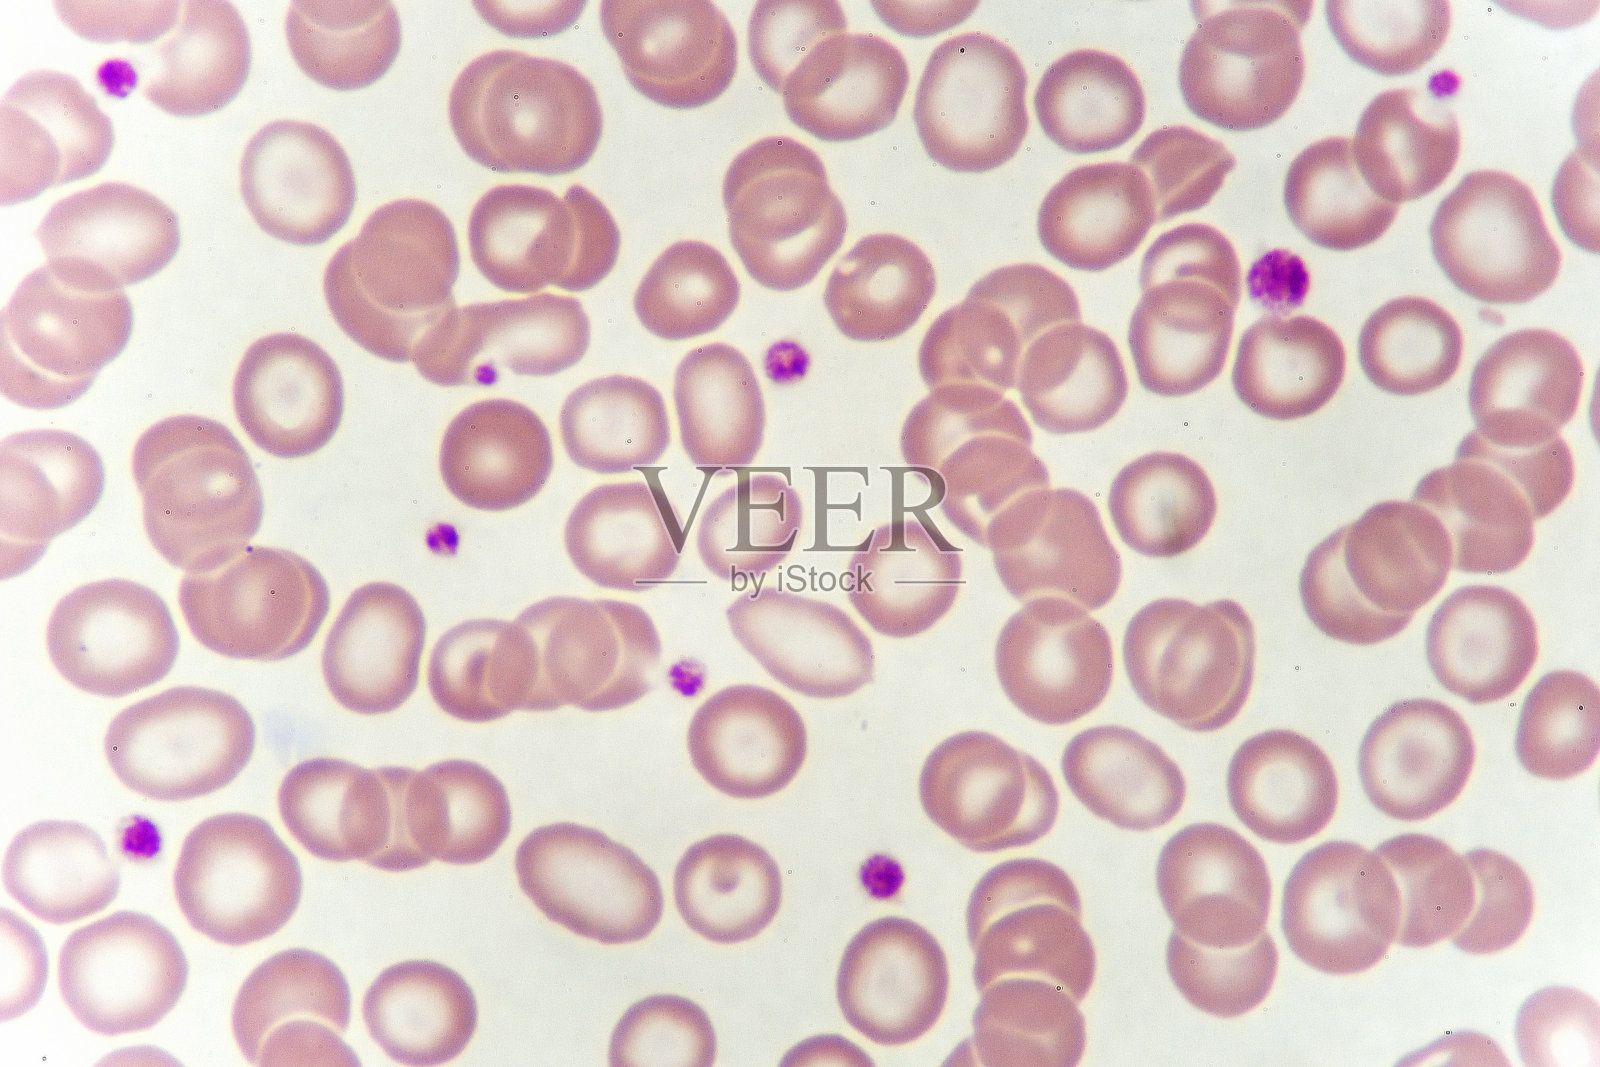 针对异常红细胞的细胞照片摄影图片